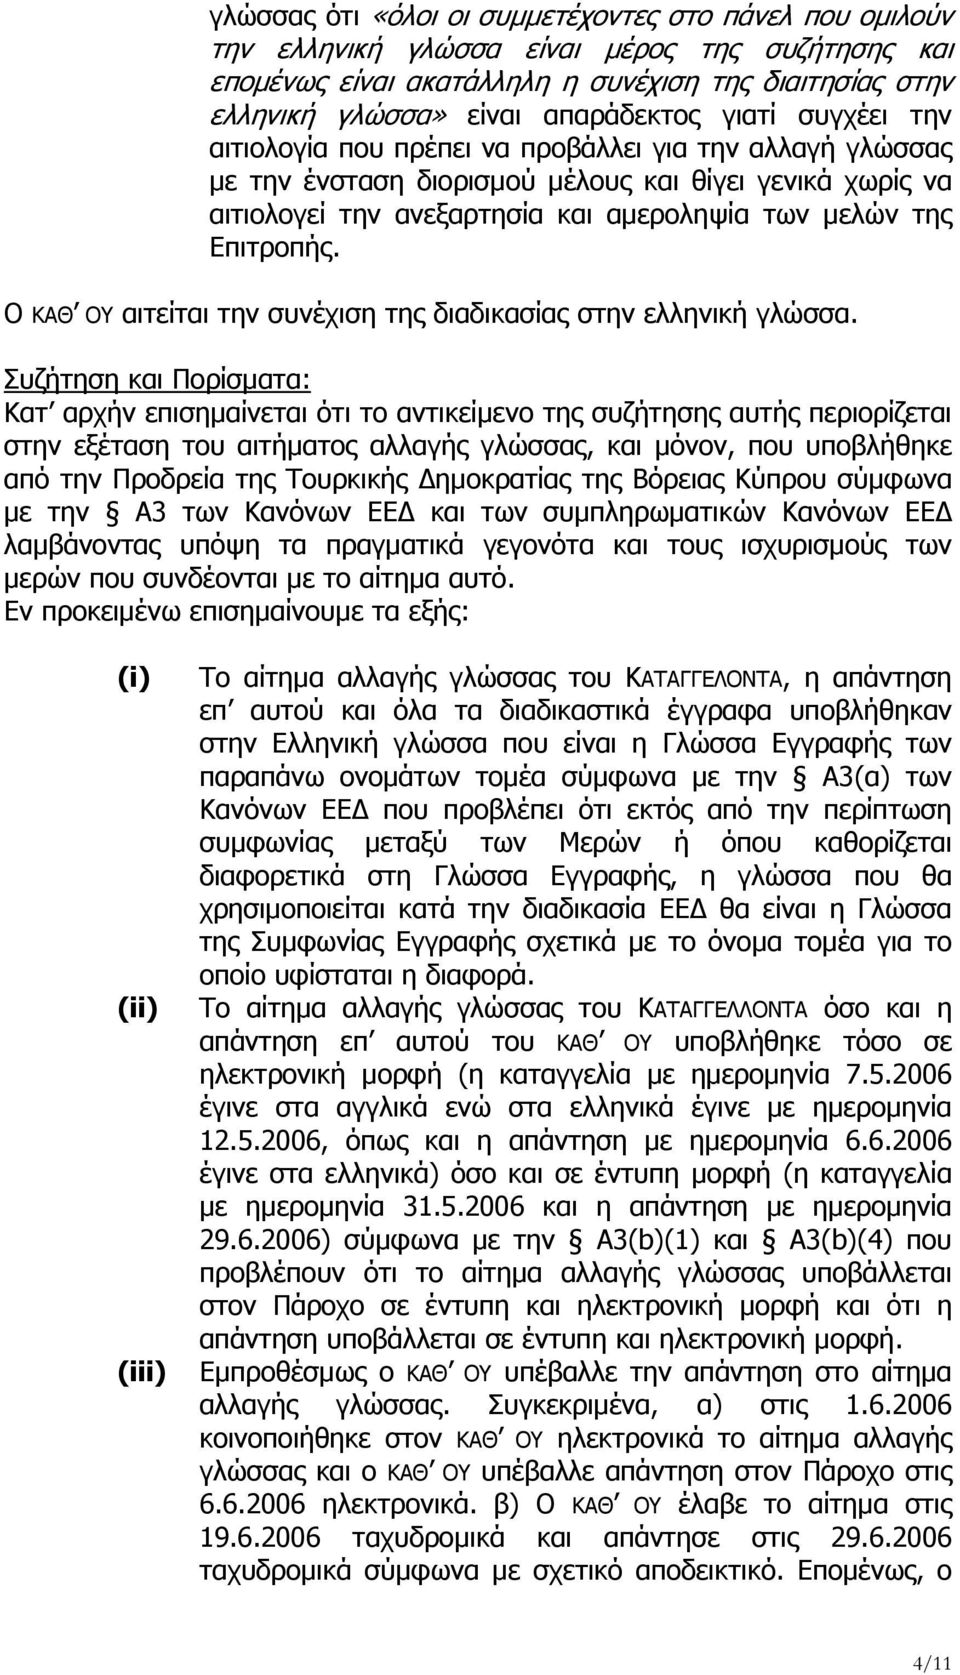 Ο ΚΑΘ ΟΥ αιτείται την συνέχιση της διαδικασίας στην ελληνική γλώσσα.